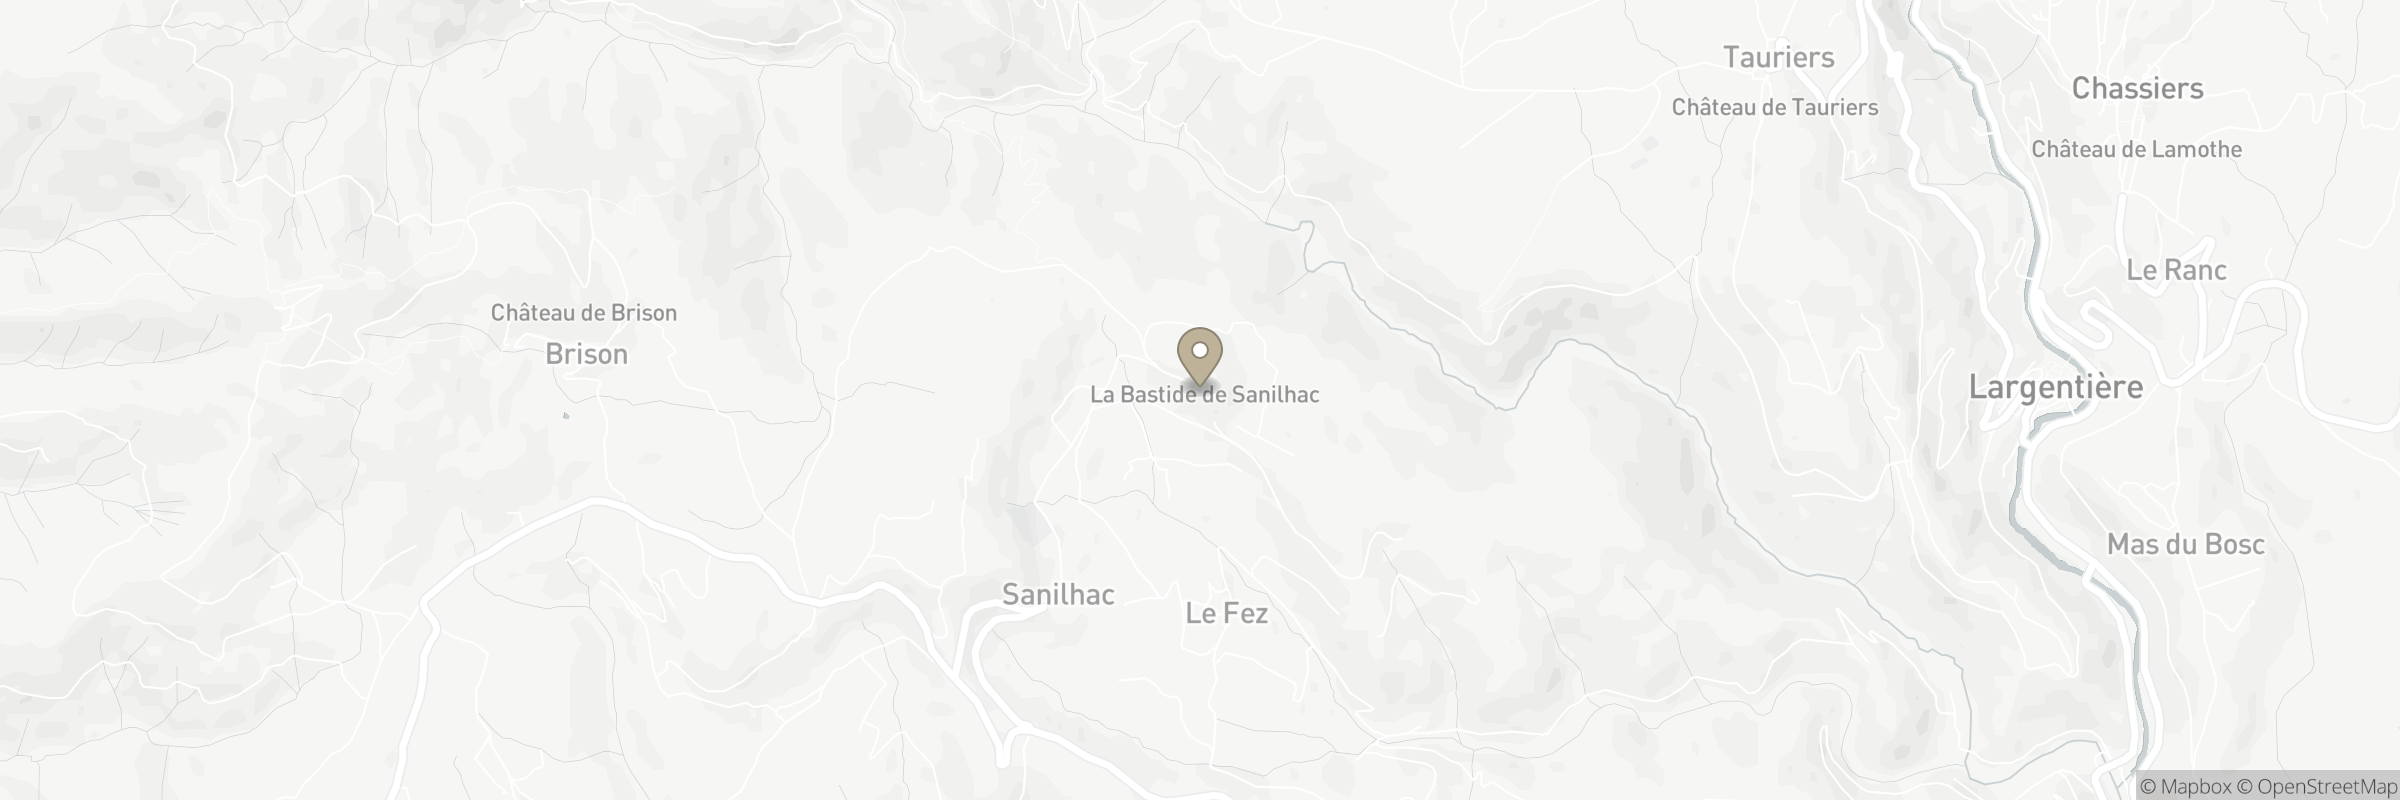 Die Karte zeigt die Adresse von La Bastide de Sanilhac